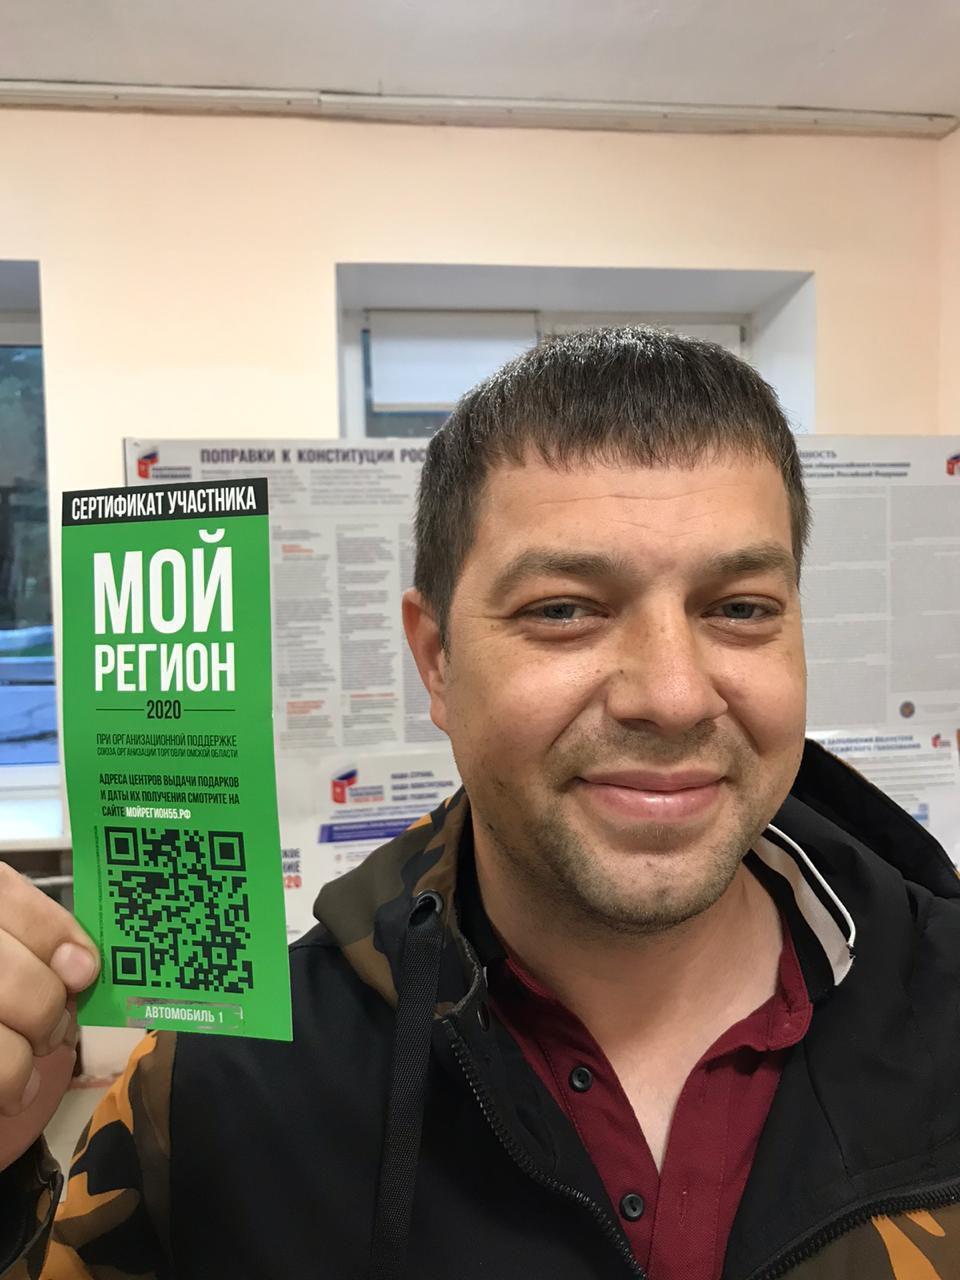 Омский менеджер выиграл автомобиль на голосовании по Конституции #Новости #Общество #Омск